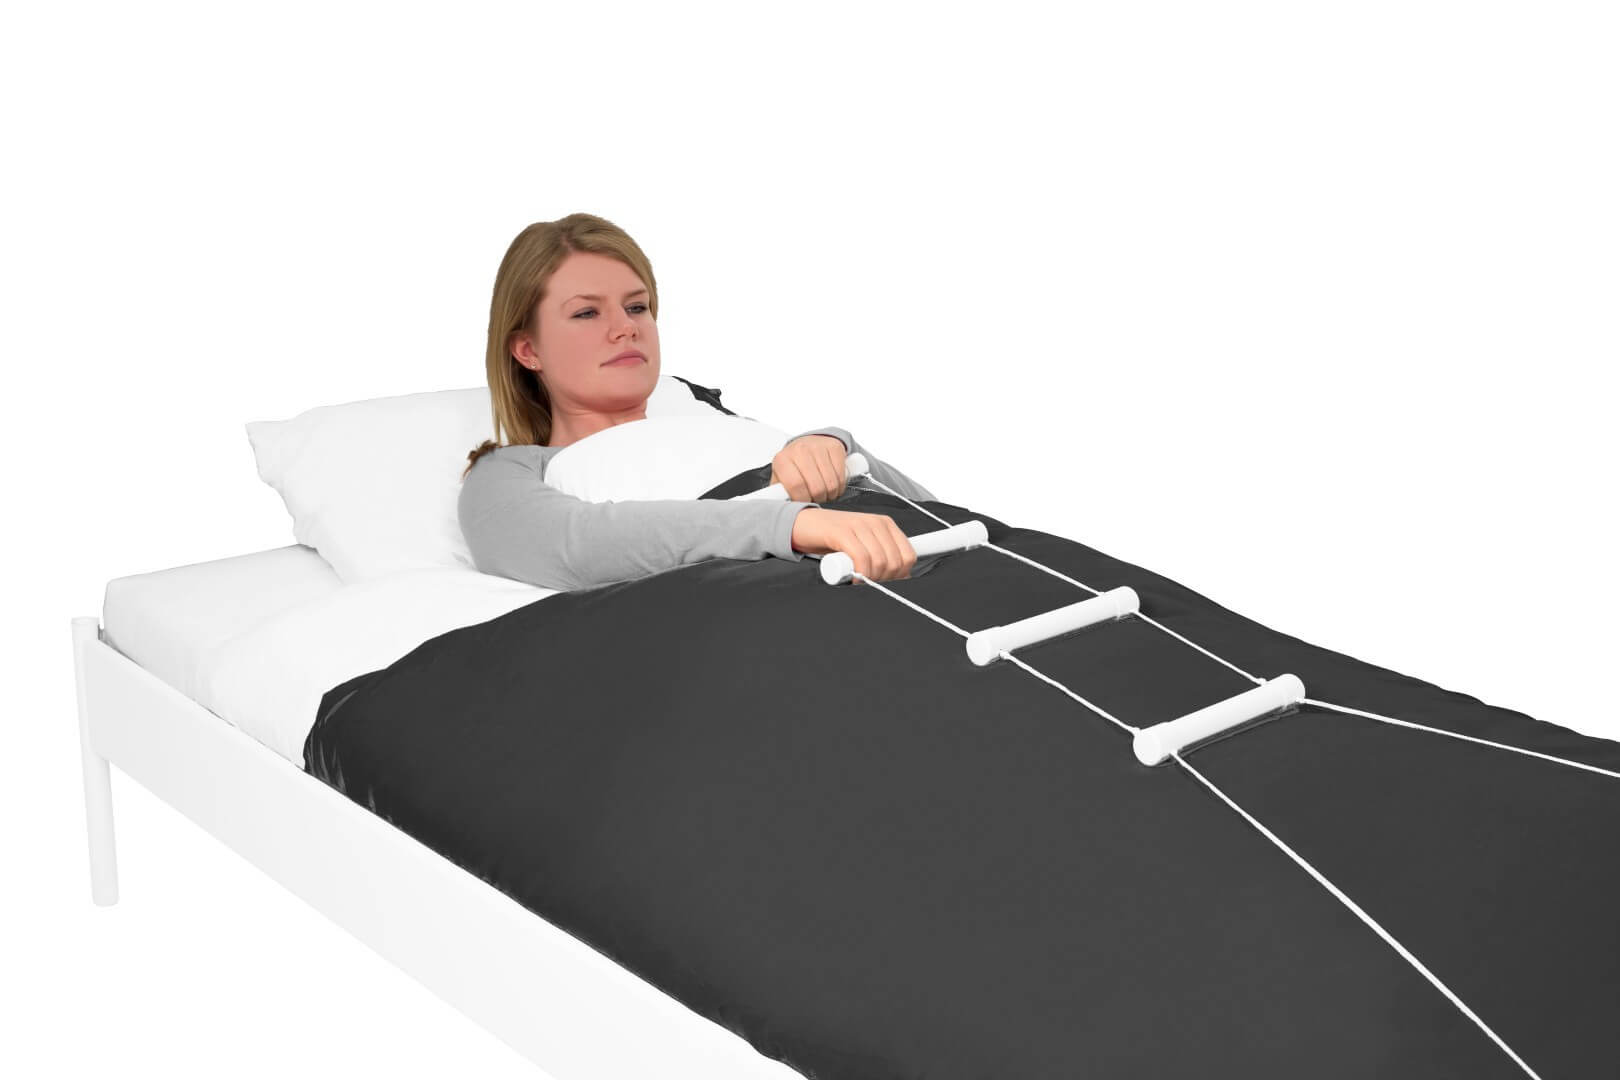 Escalera de incorporación en cama Accesorios para la cama